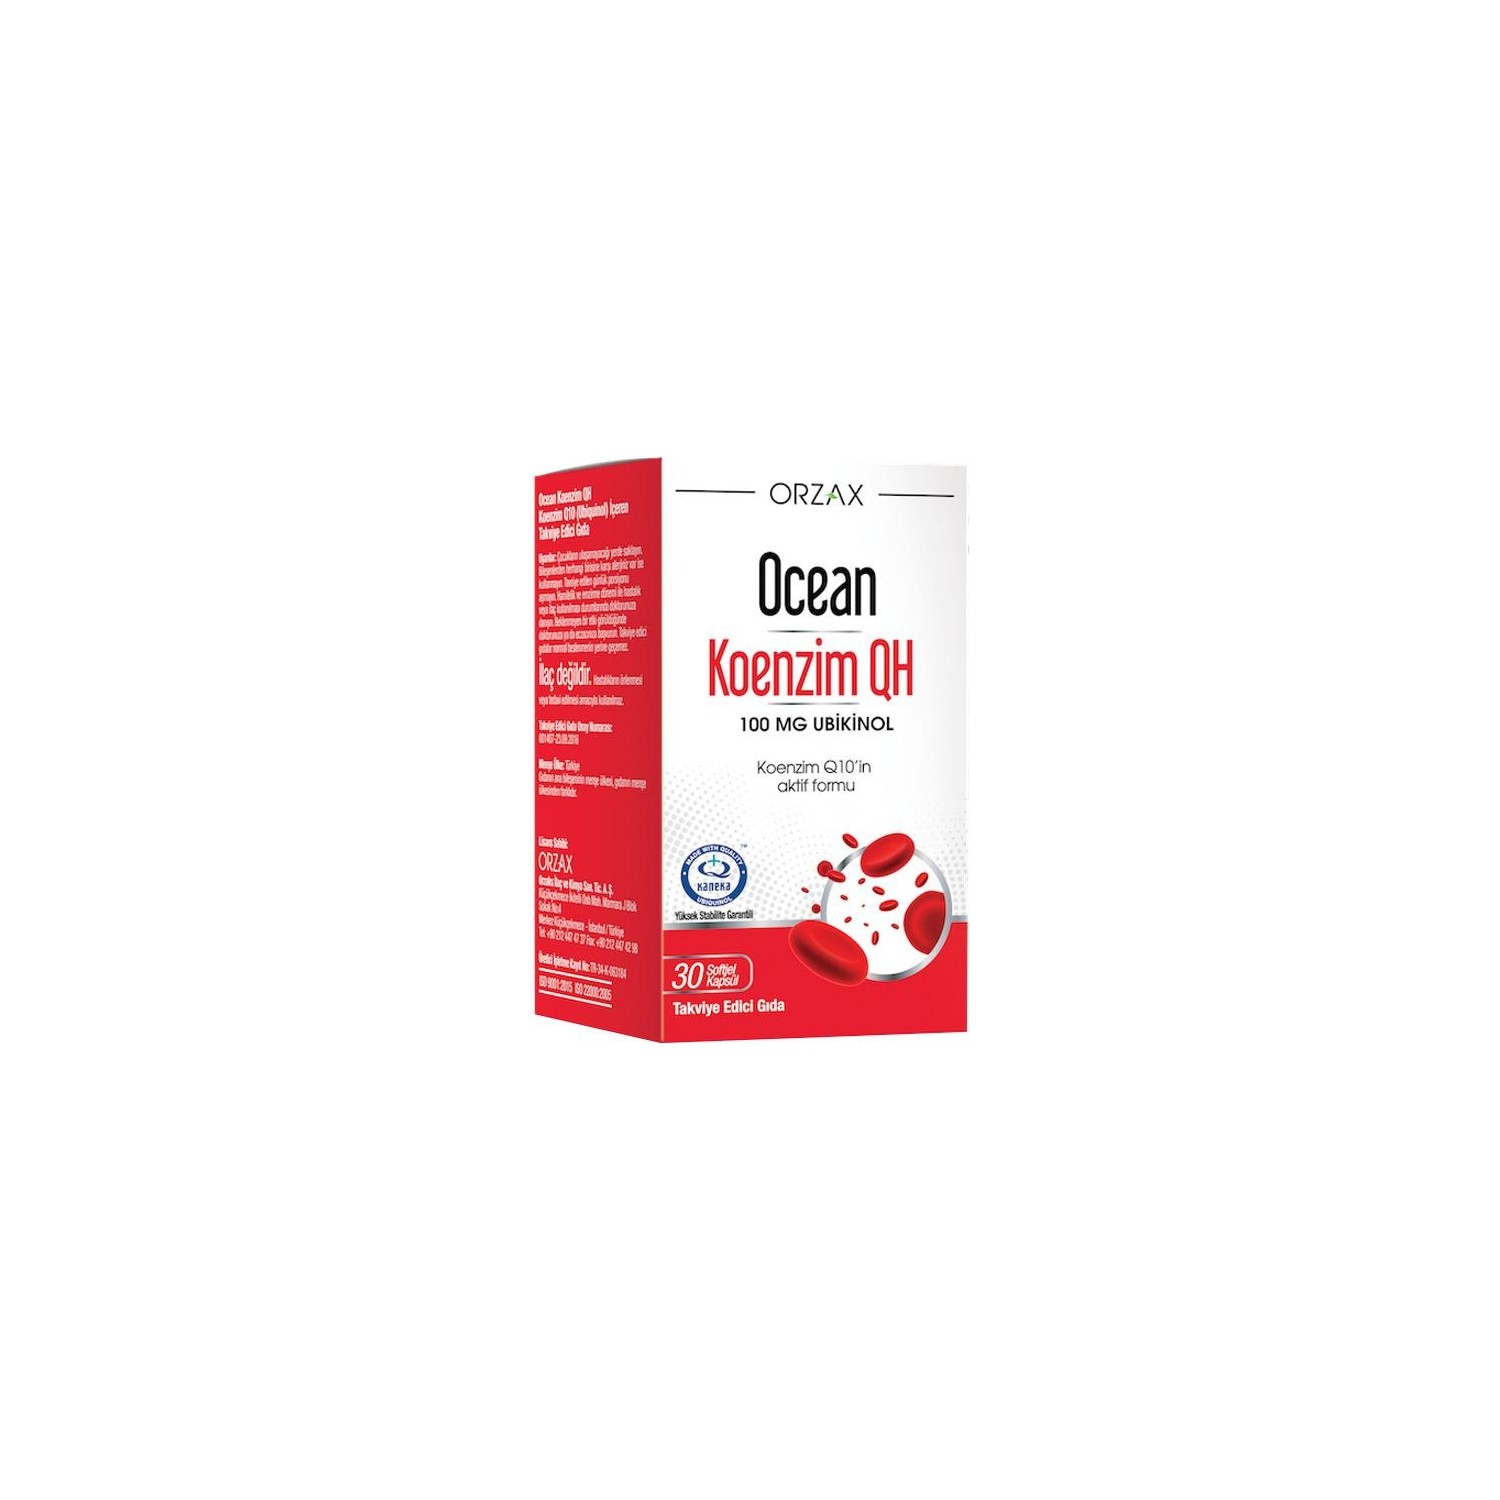 Коэнзим Qh Orzax 100 мг, 30 капсул